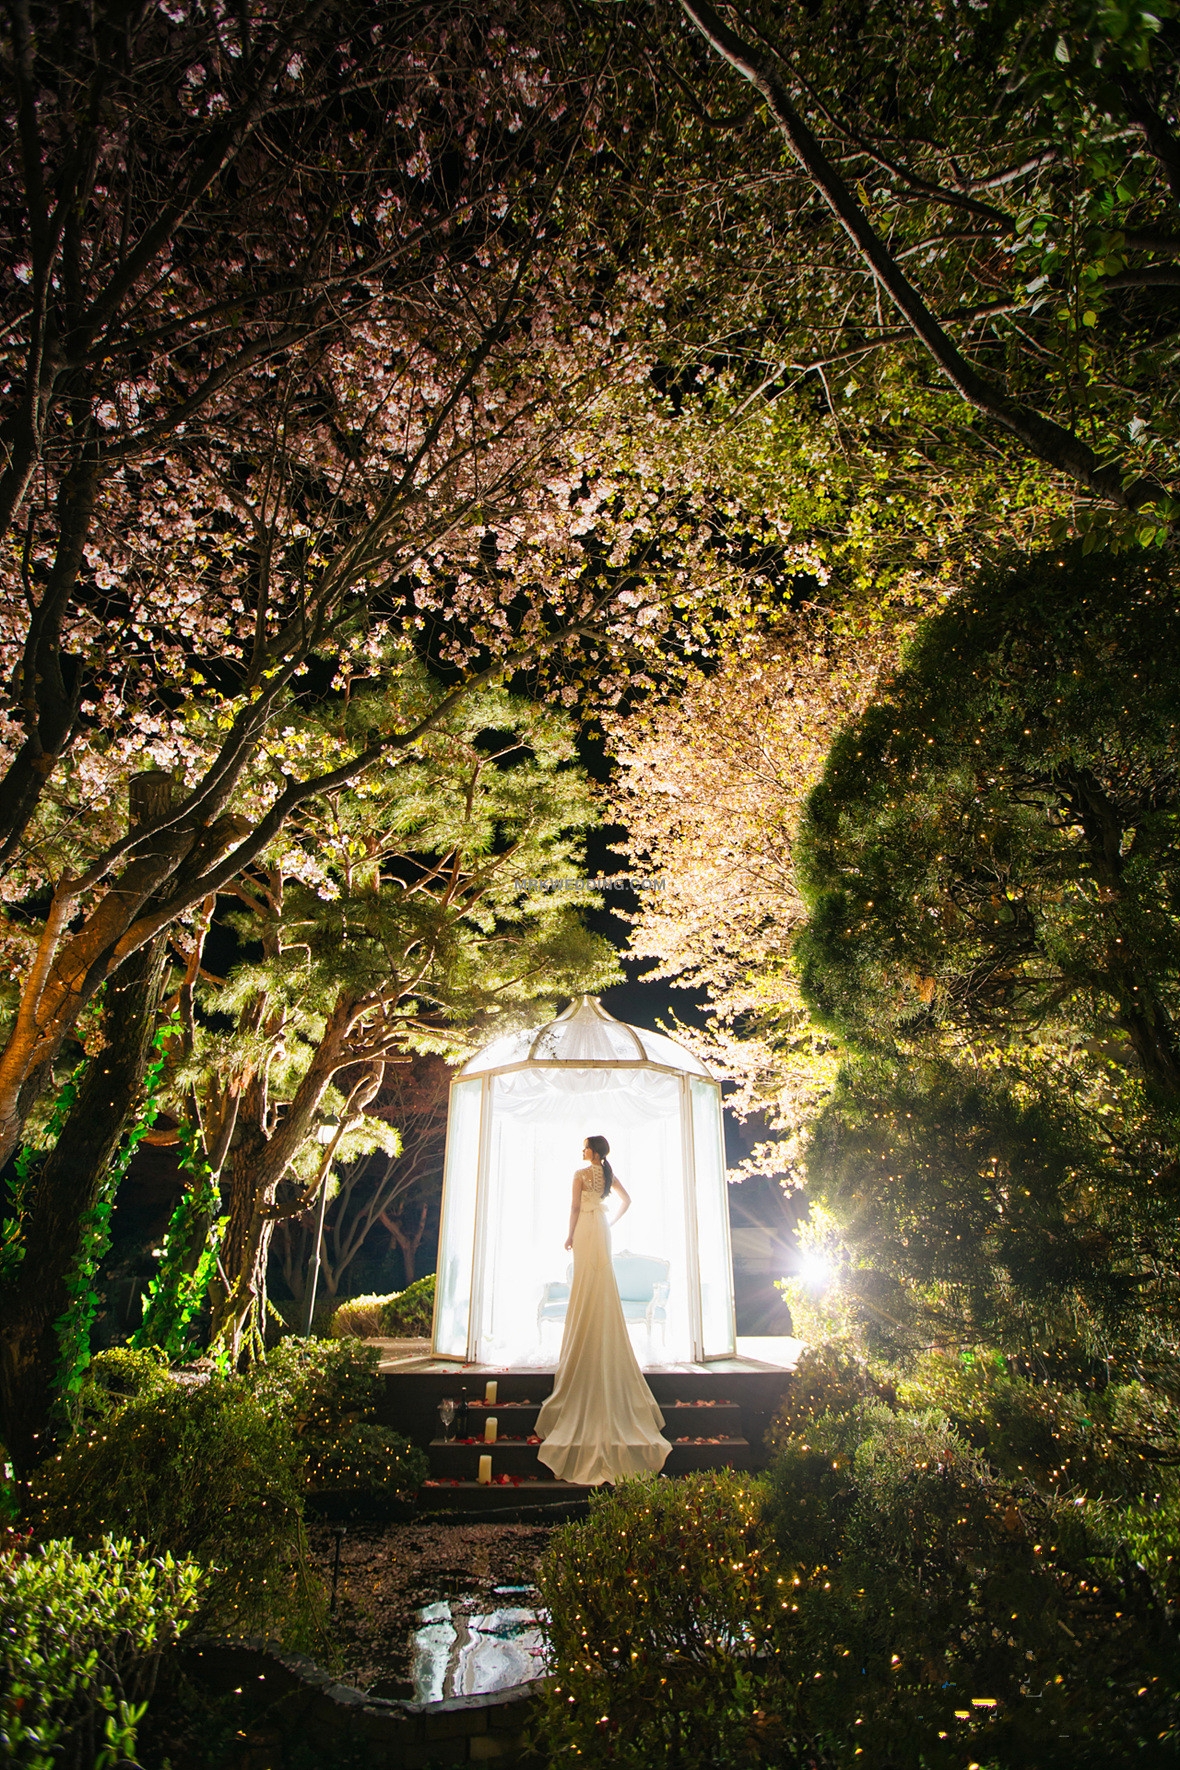 korea pre wedding (60).jpg